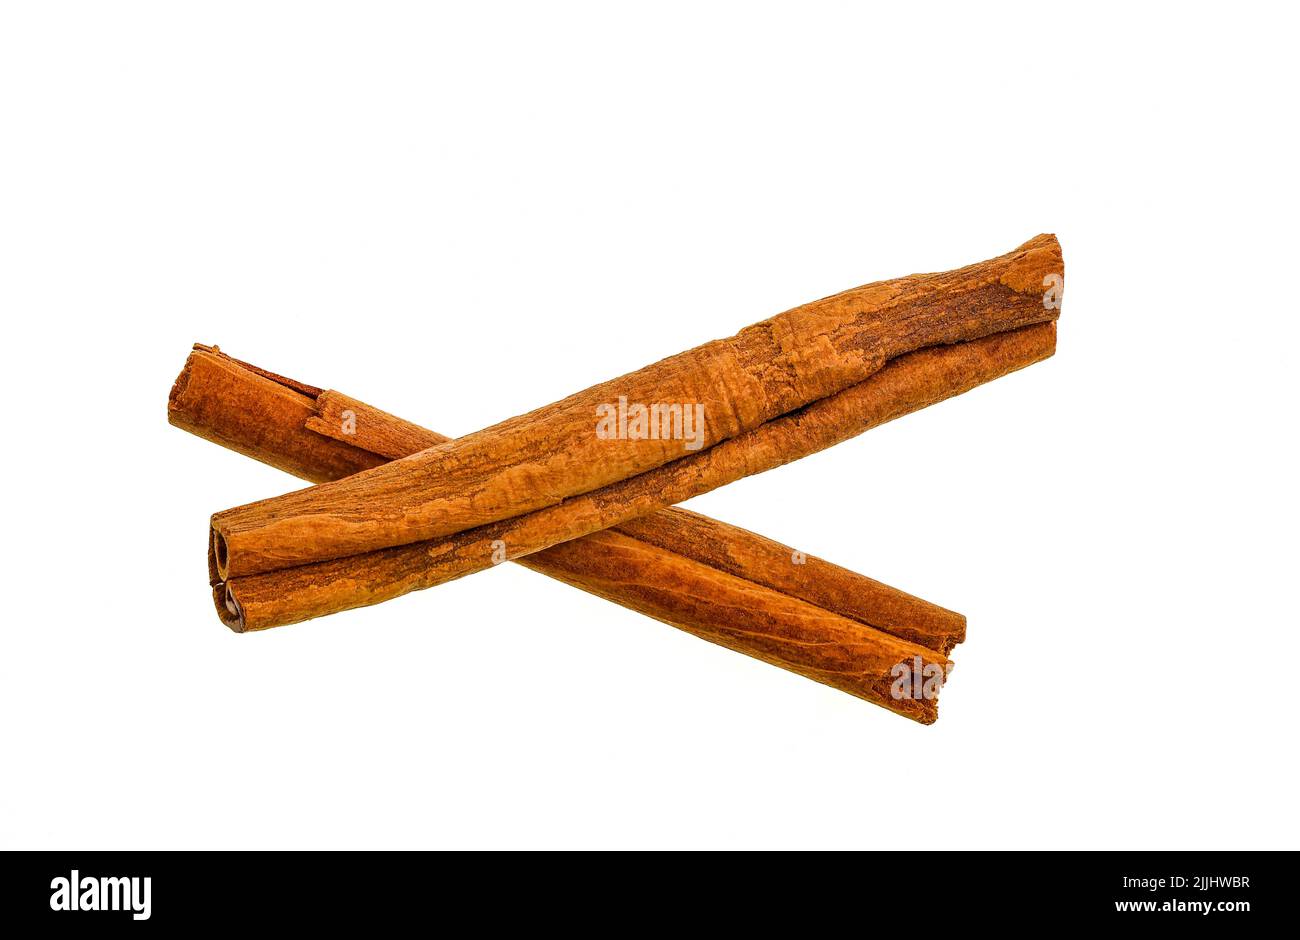 La canela es una especia hecha de la corteza interna de los árboles científicamente conocida como Cinnamomum Los palitos de canela son las tiras de corteza interna rodada que se curan en Foto de stock